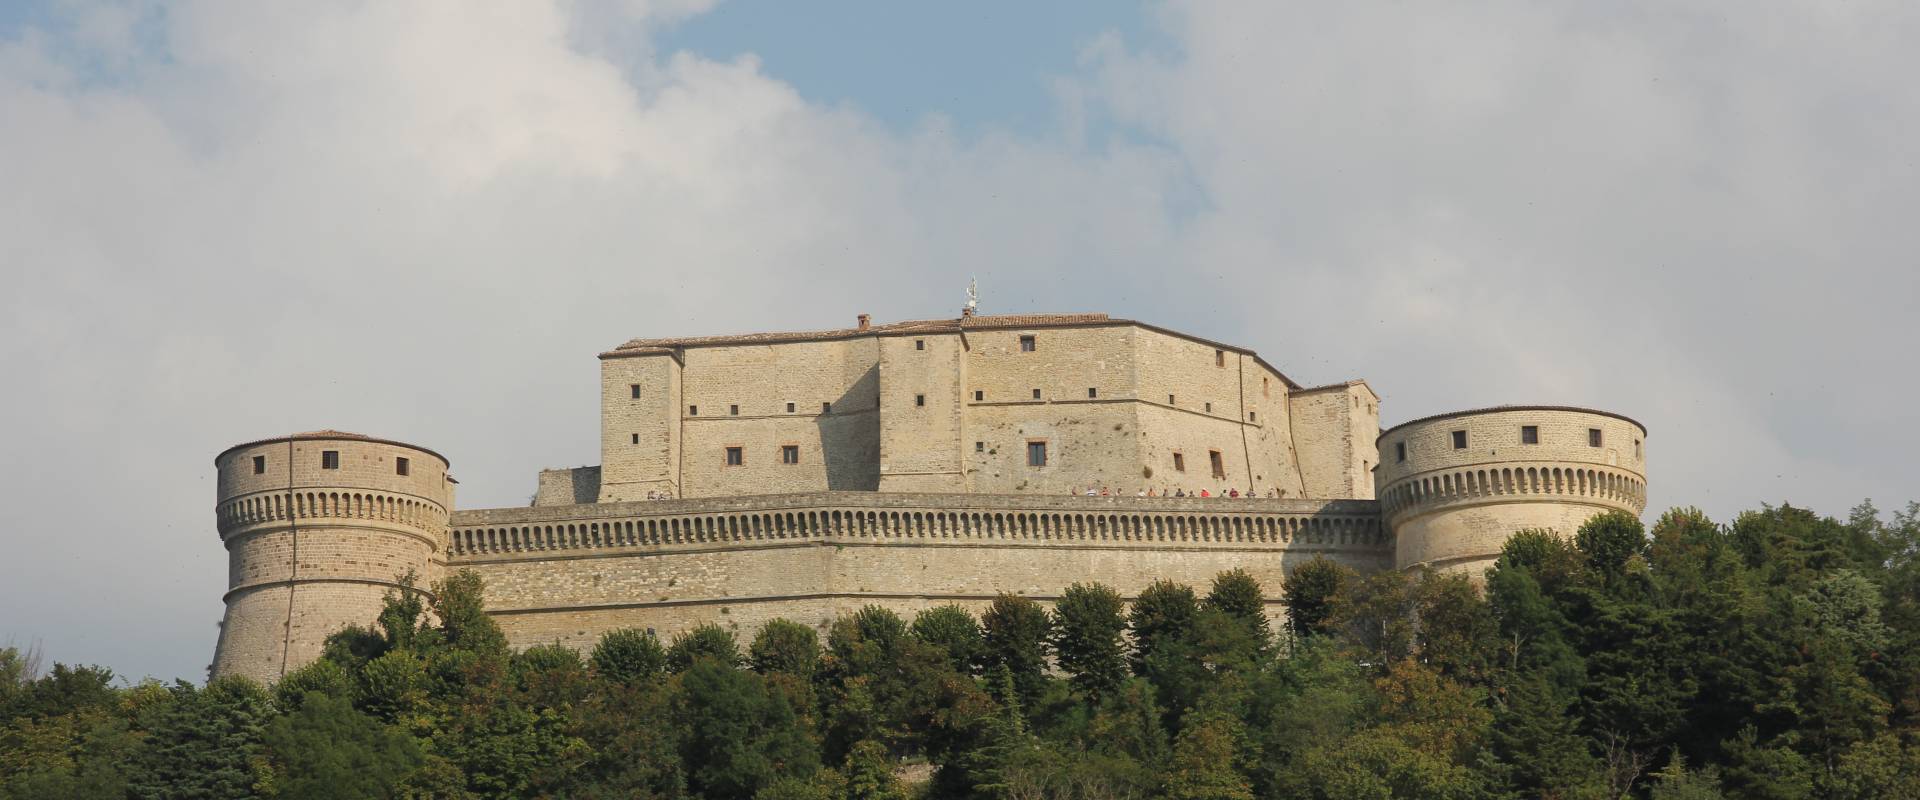 San Leo, forte di San Leo (14) foto di Gianni Careddu